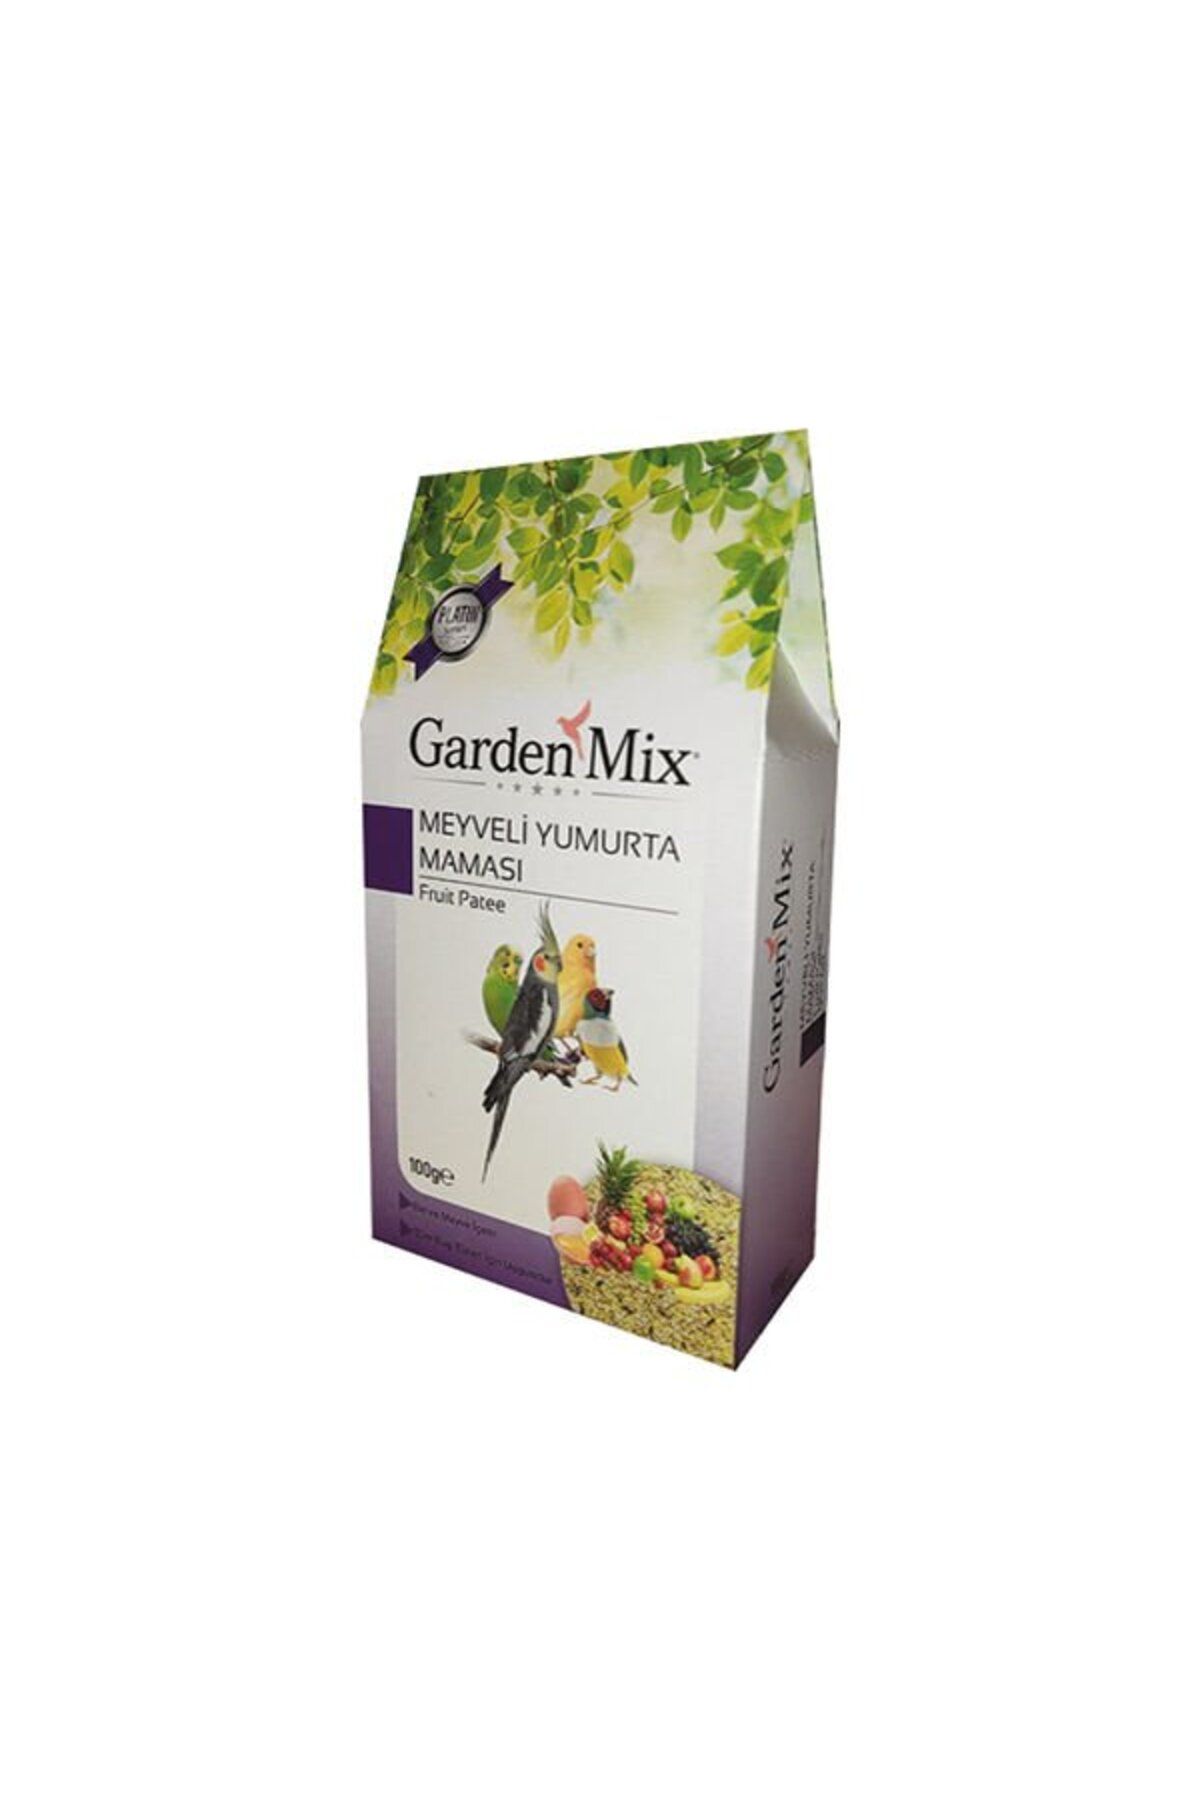 Gardenmix Garden Mix Meyveli Yumurta Maması 100gr